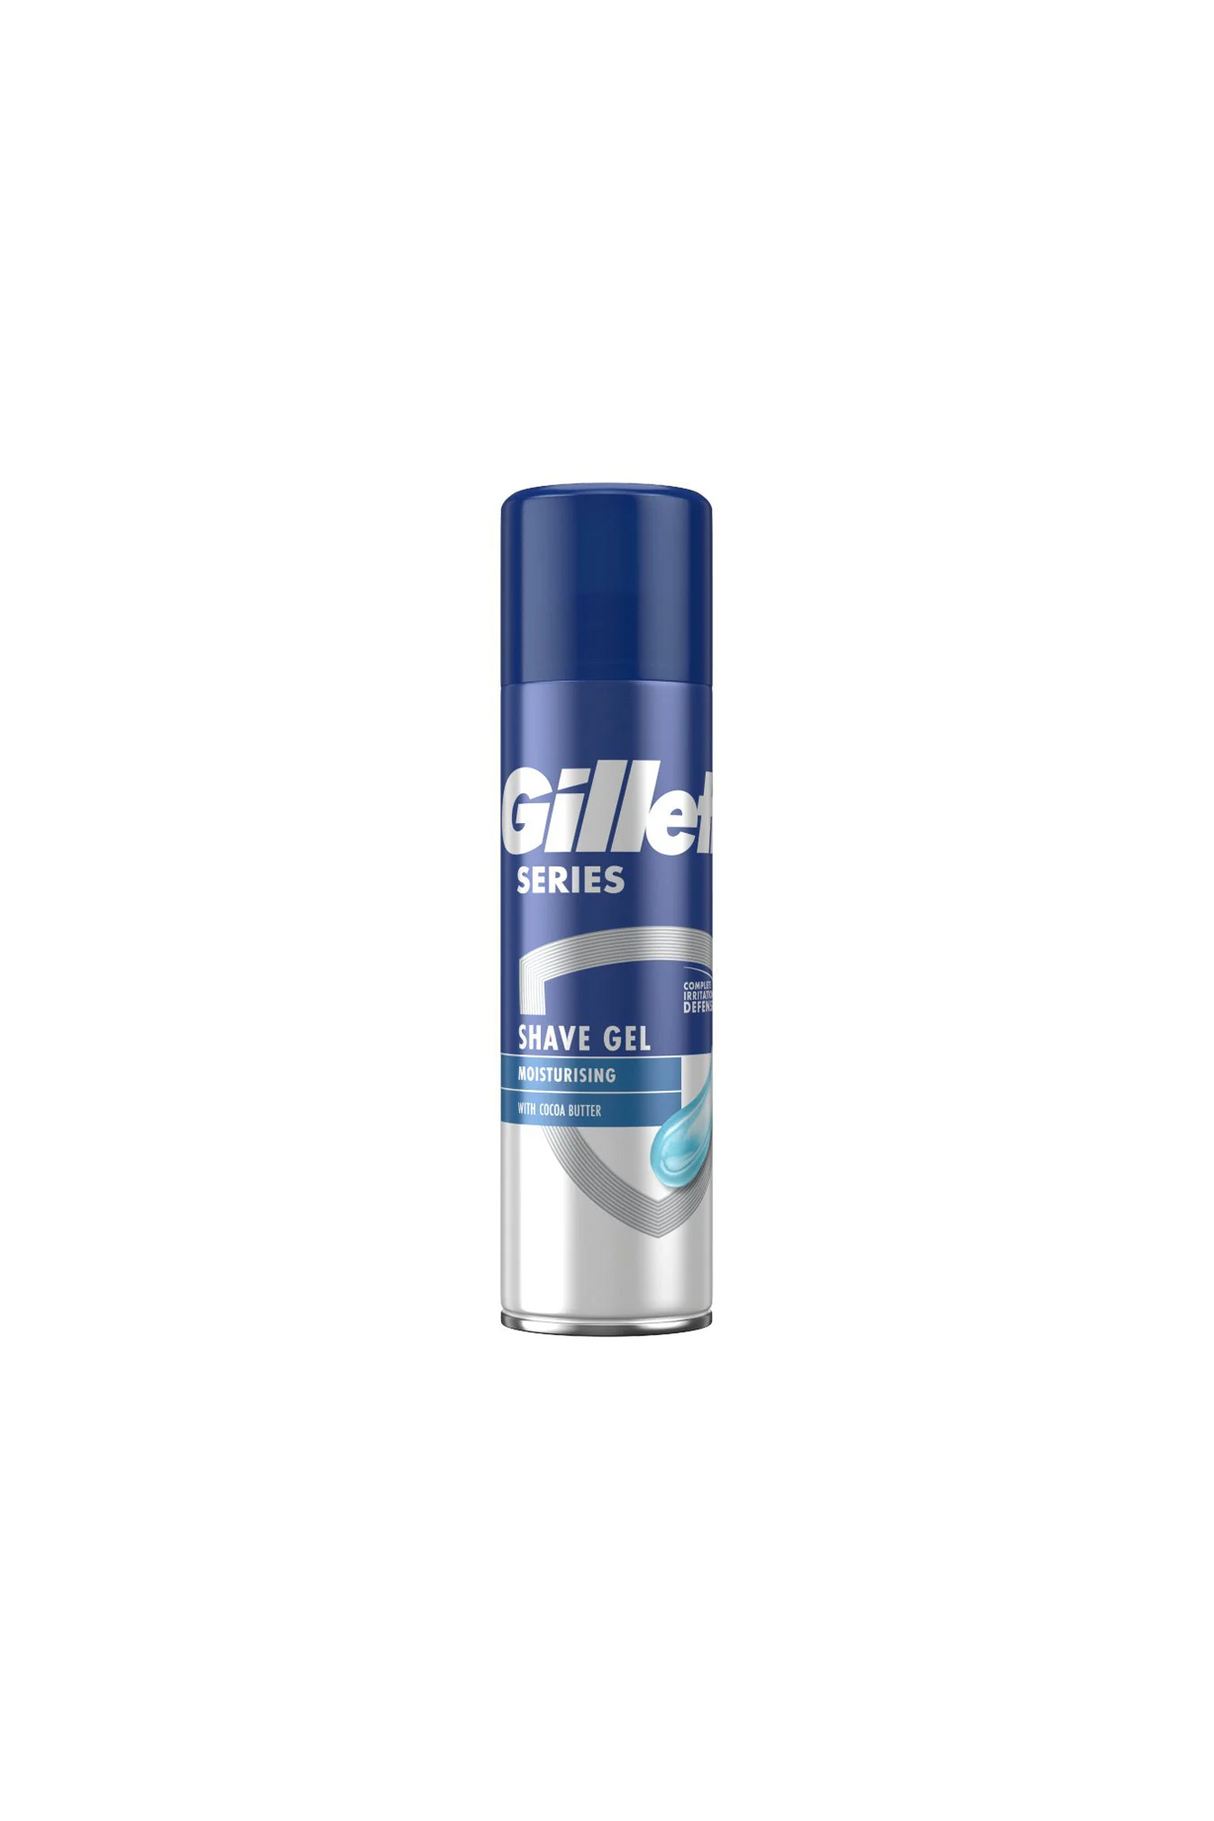 gillette shaving gel moisturizing 200ml